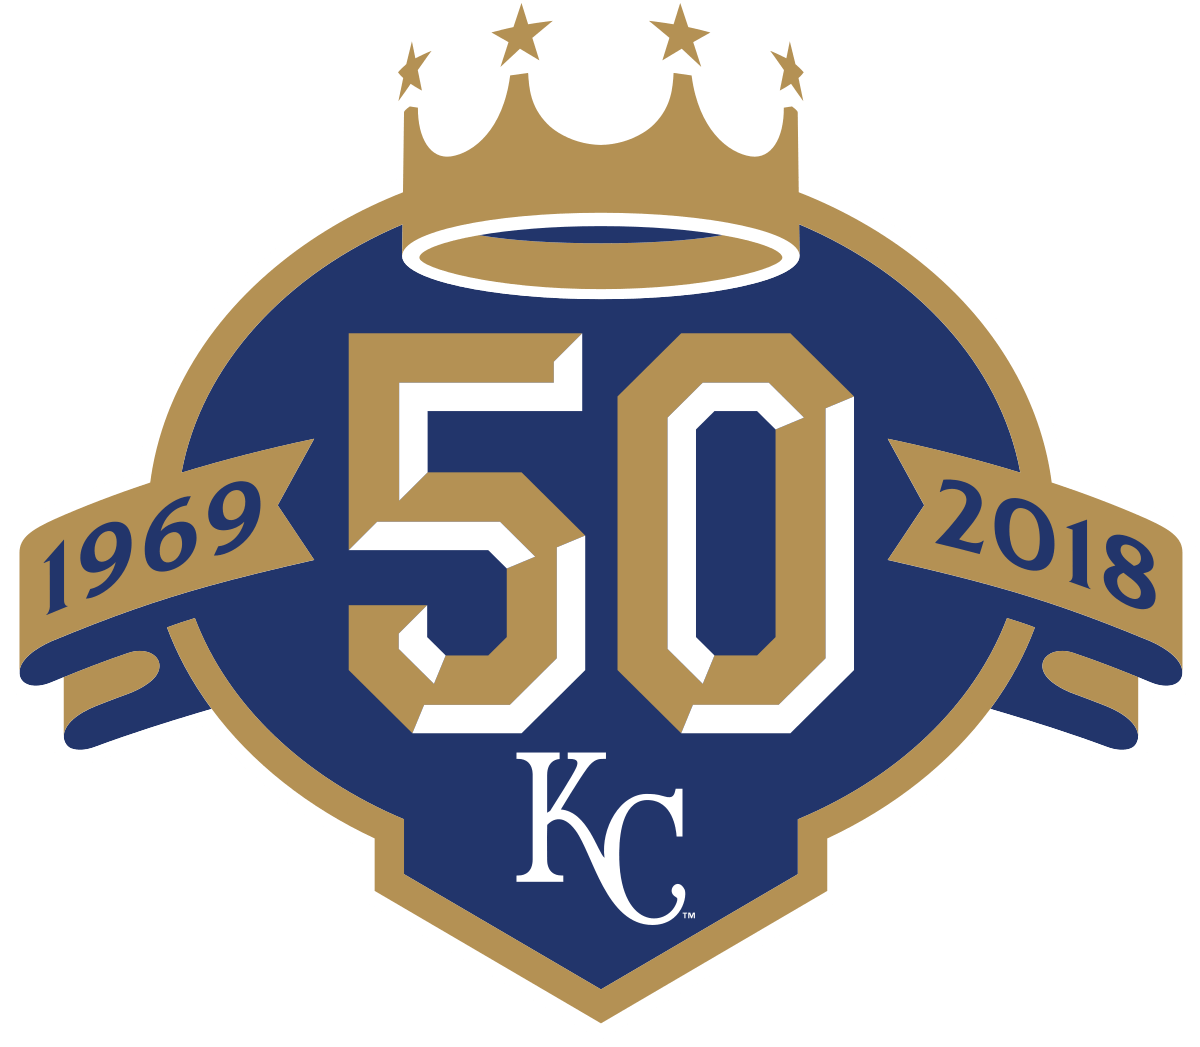 Royals Baseball Logo - Kansas City Royals season